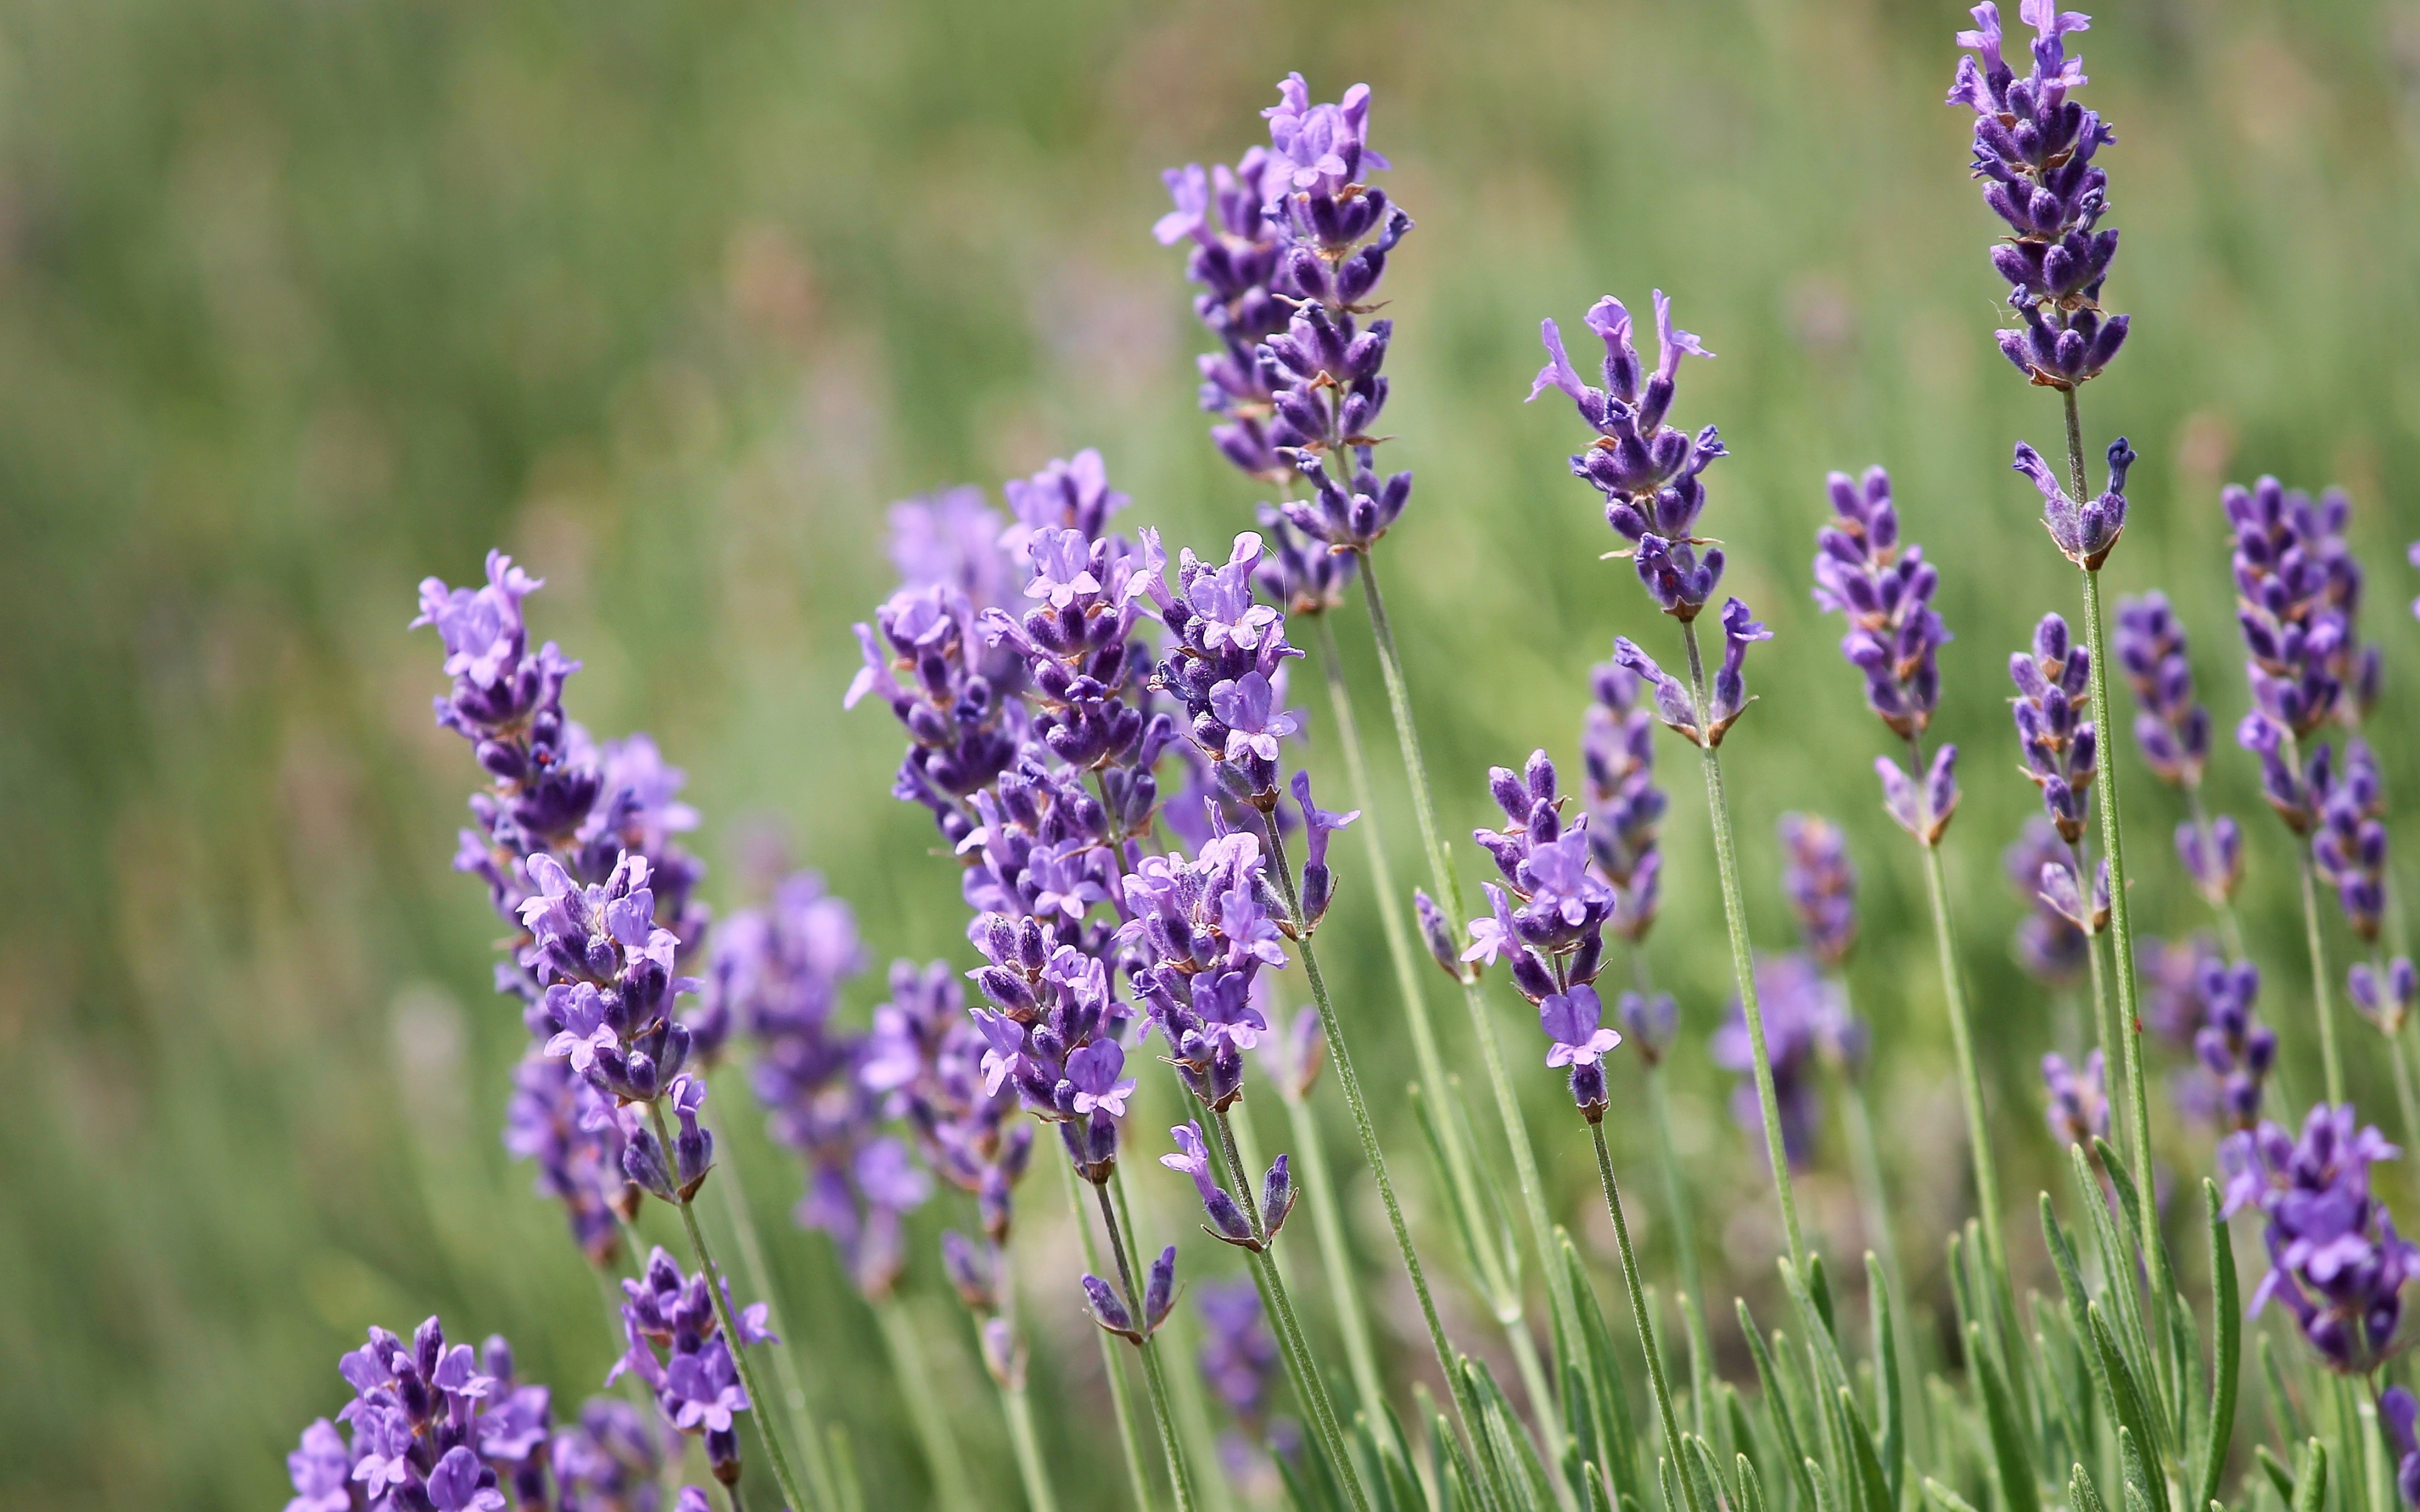 https://wallpapersmug.com/download/3840x2400/8ab7b6/lavender-plants-violet-flowers.jpg